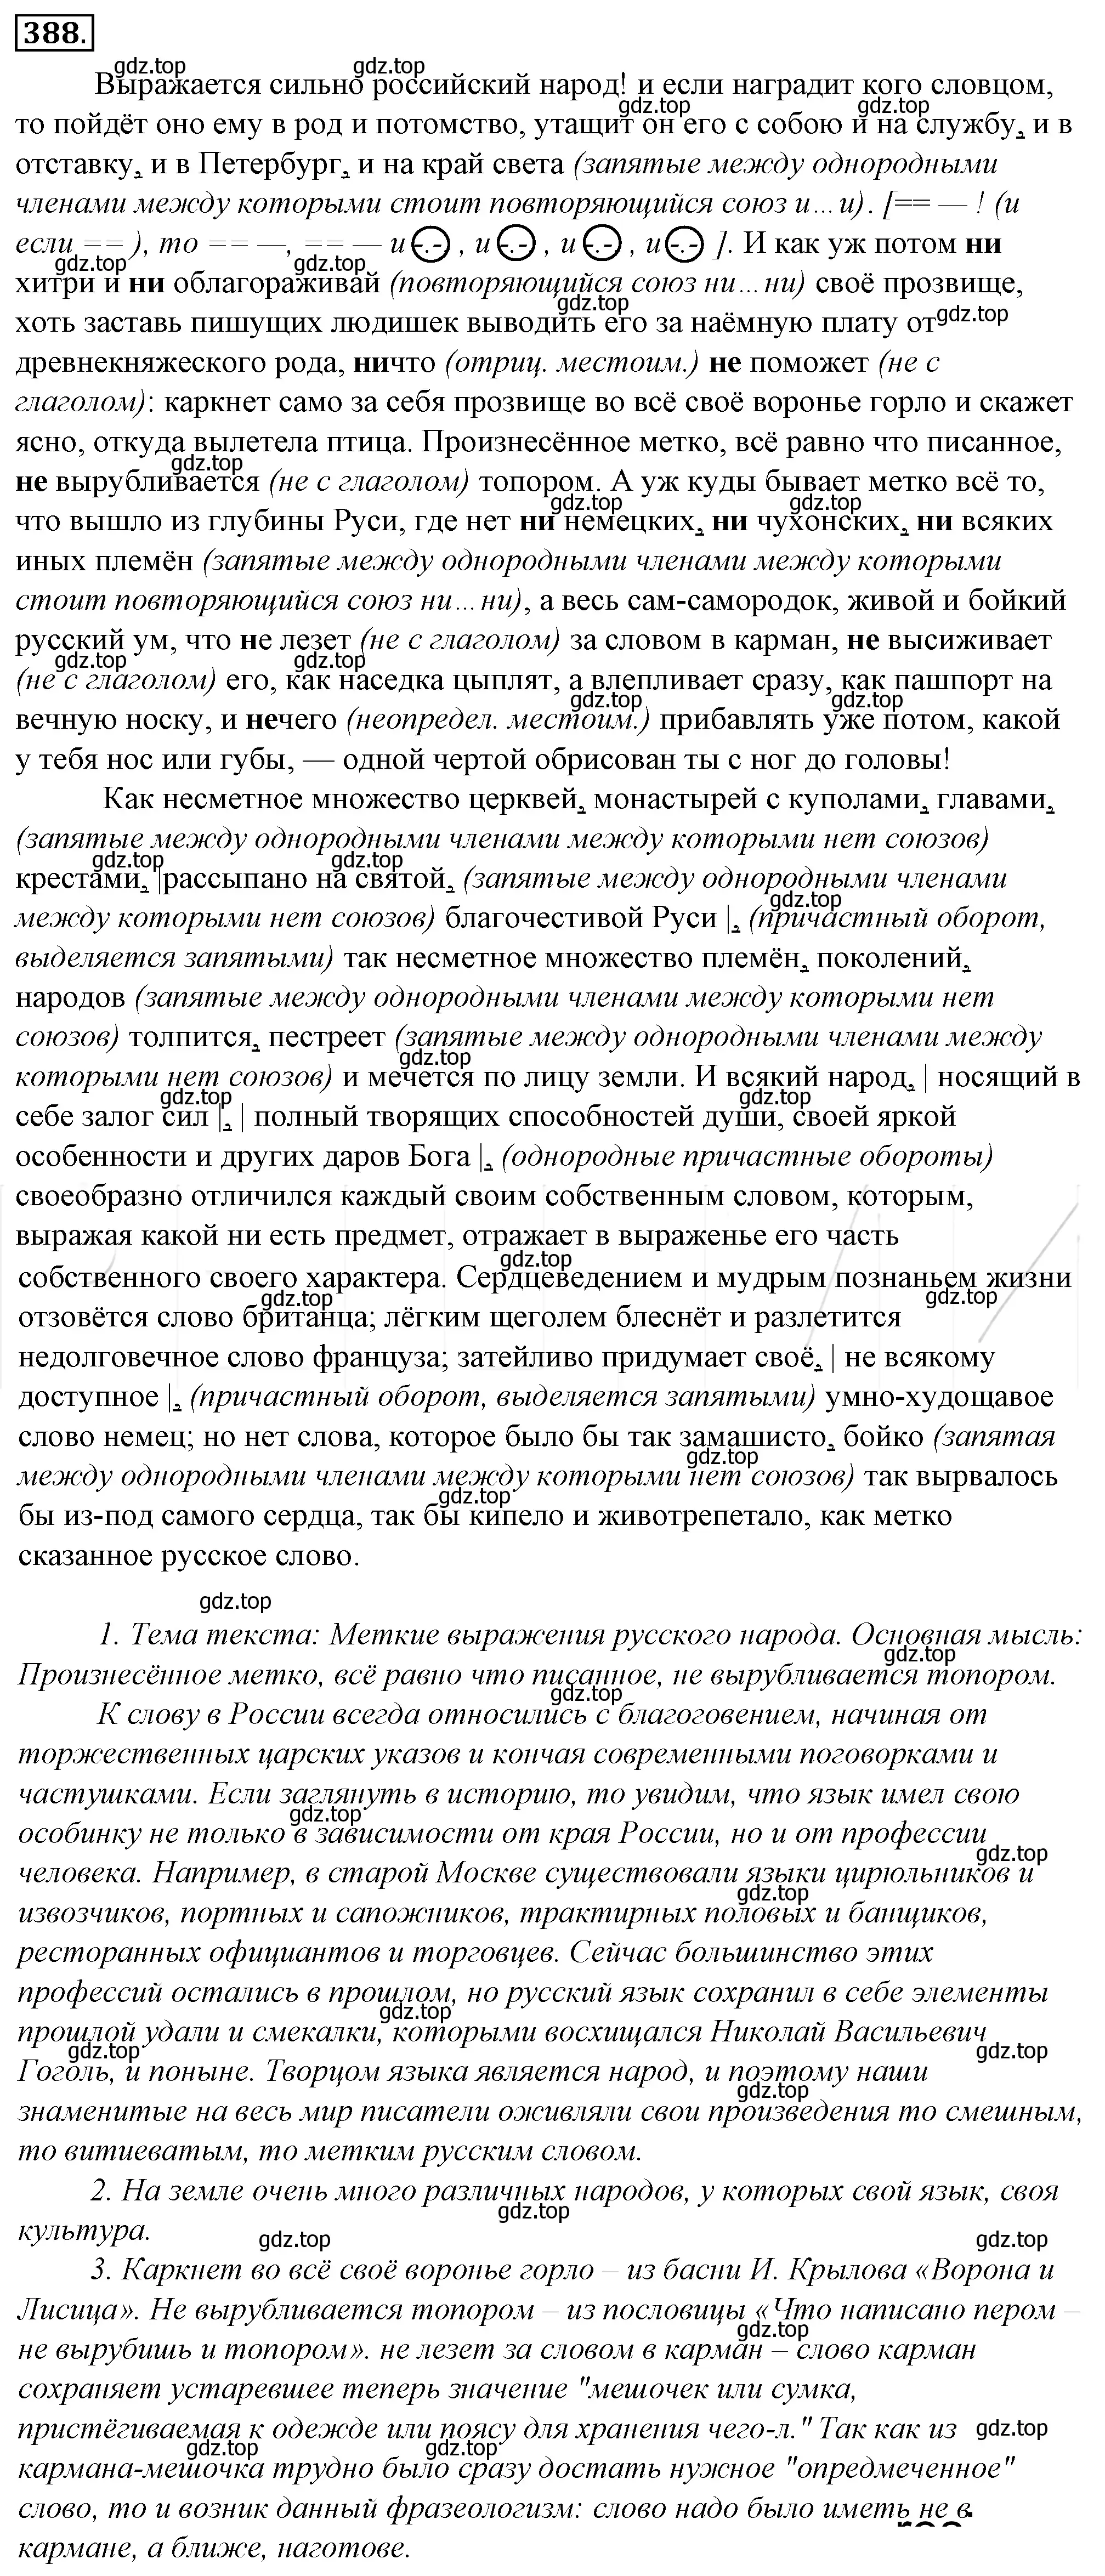 Решение 4. номер 53 (страница 72) гдз по русскому языку 10-11 класс Гольцова, Шамшин, учебник 2 часть